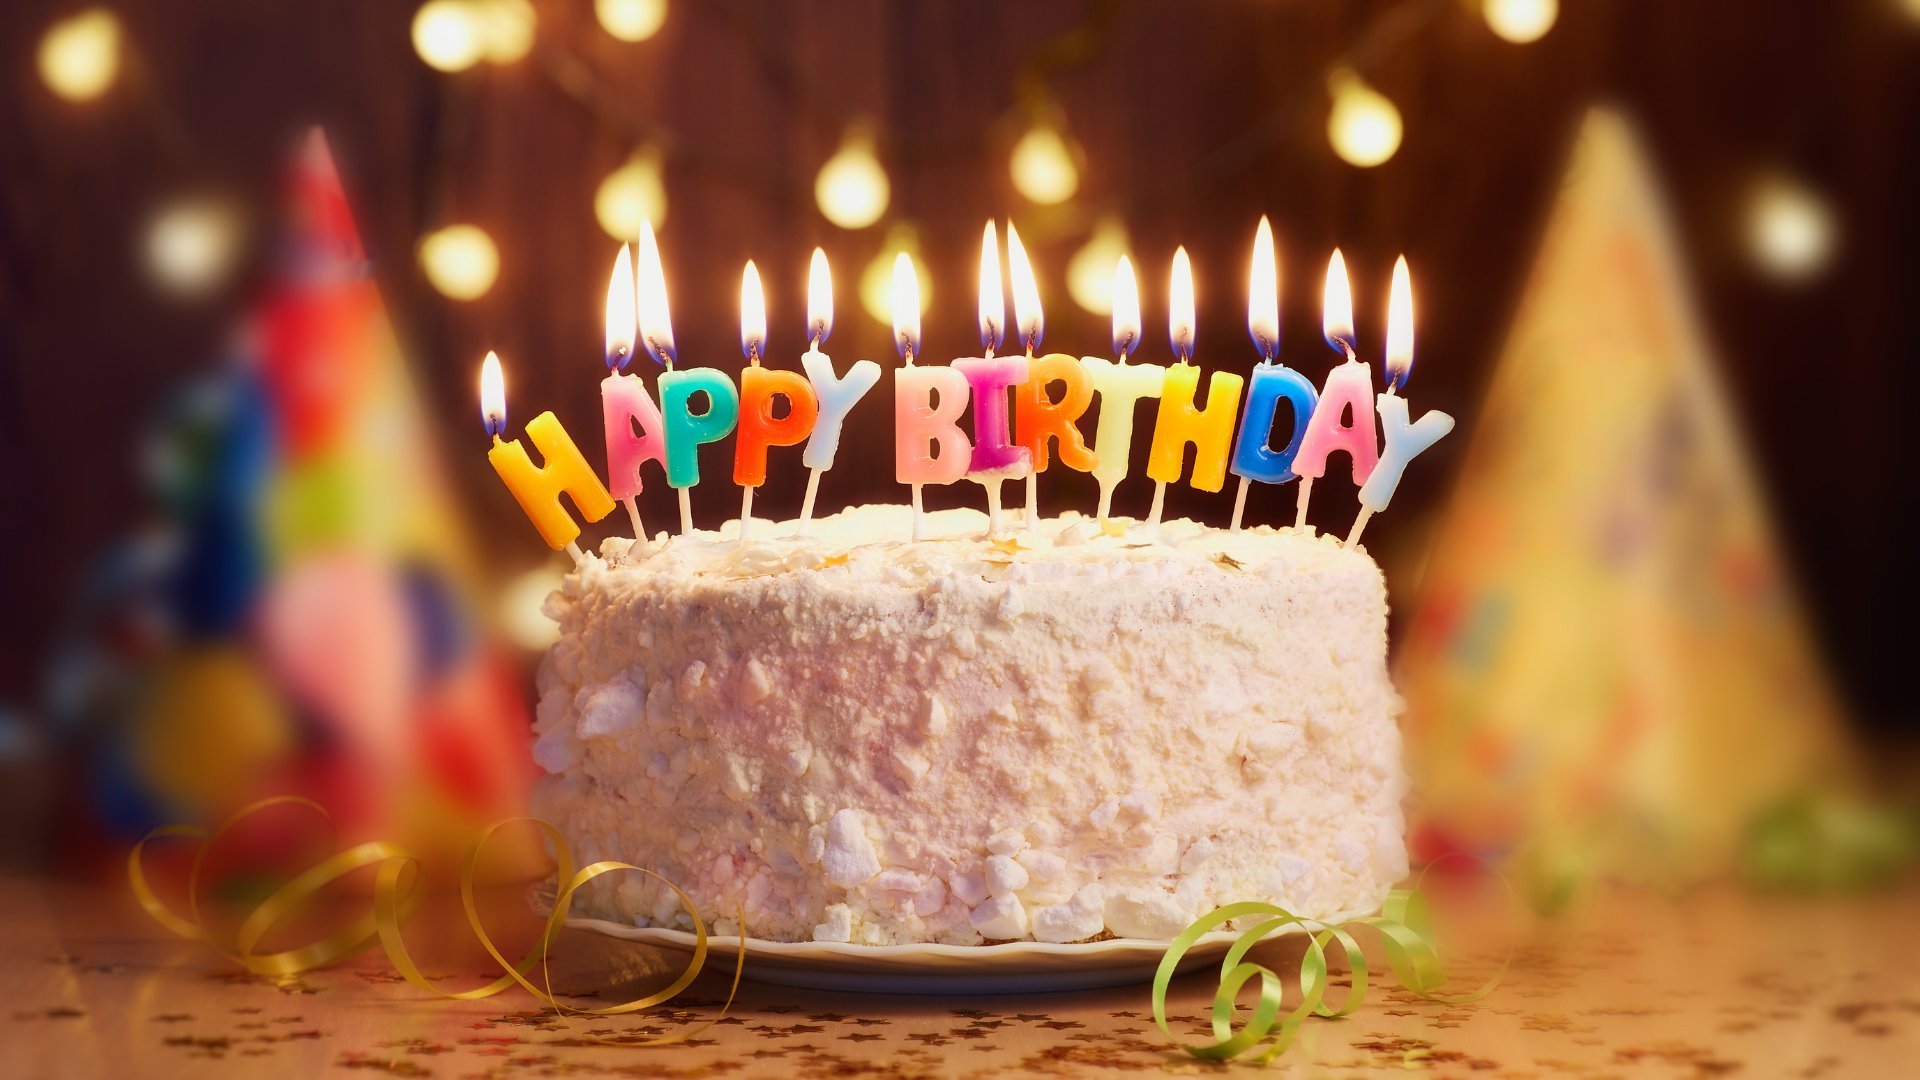 Um bolo de aniversário com a frase happy birthday posto em cima dele.